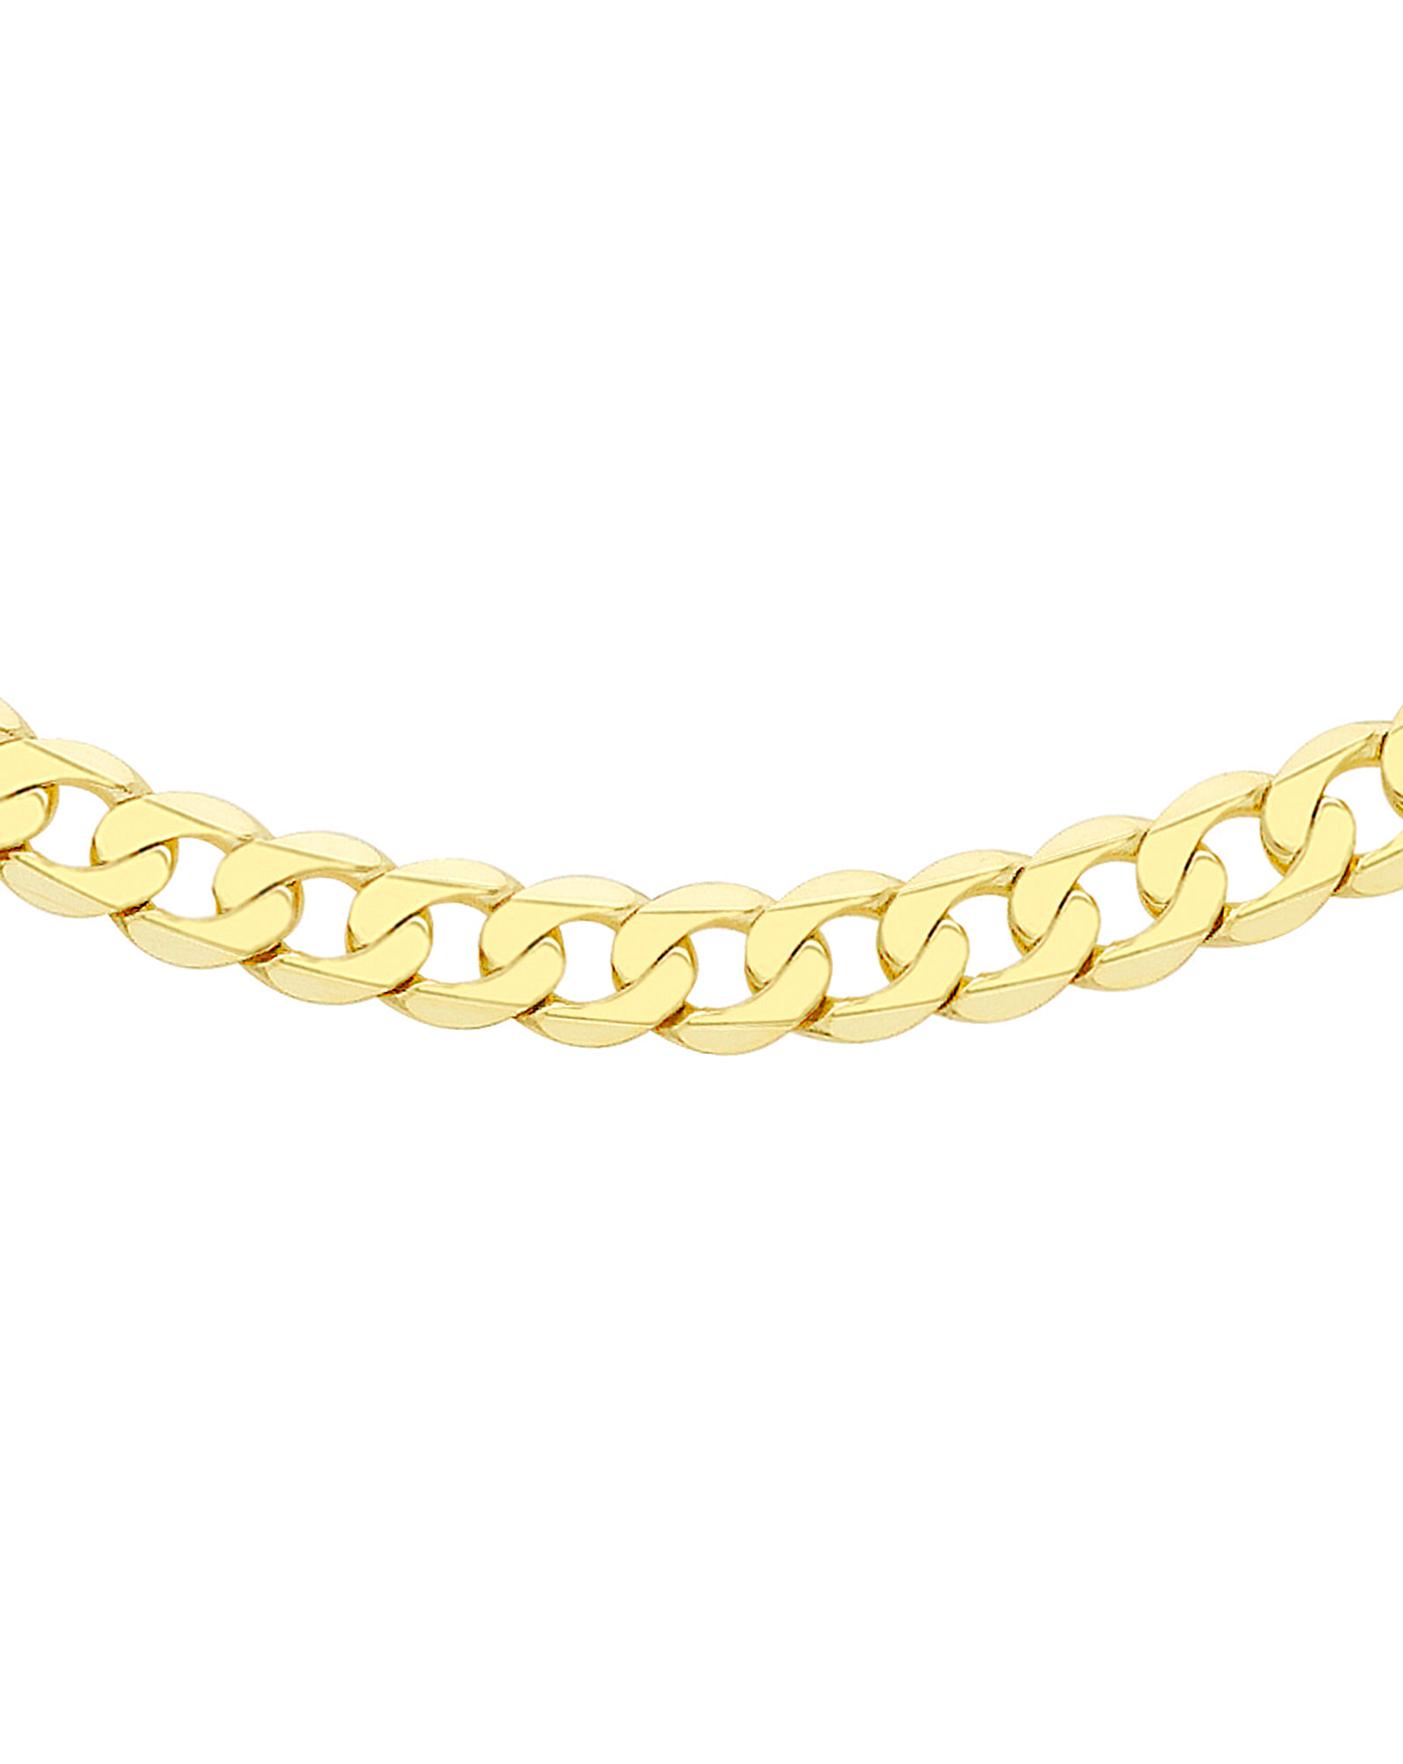 Gents 9 Carat Gold Curb Chain | Jacamo